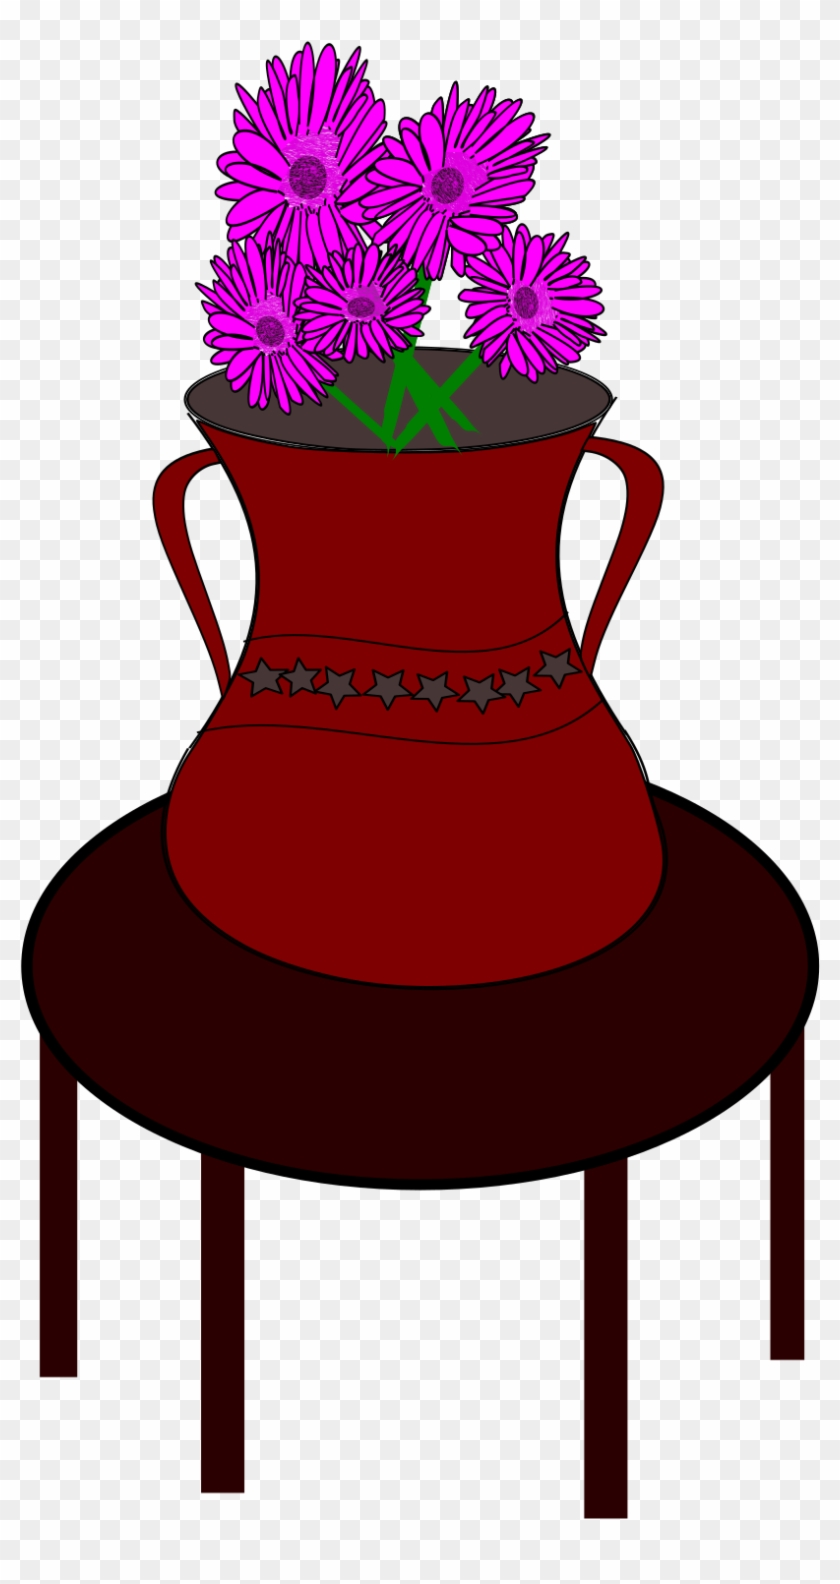 Flower Vase - Vase On Table Clipart #316006